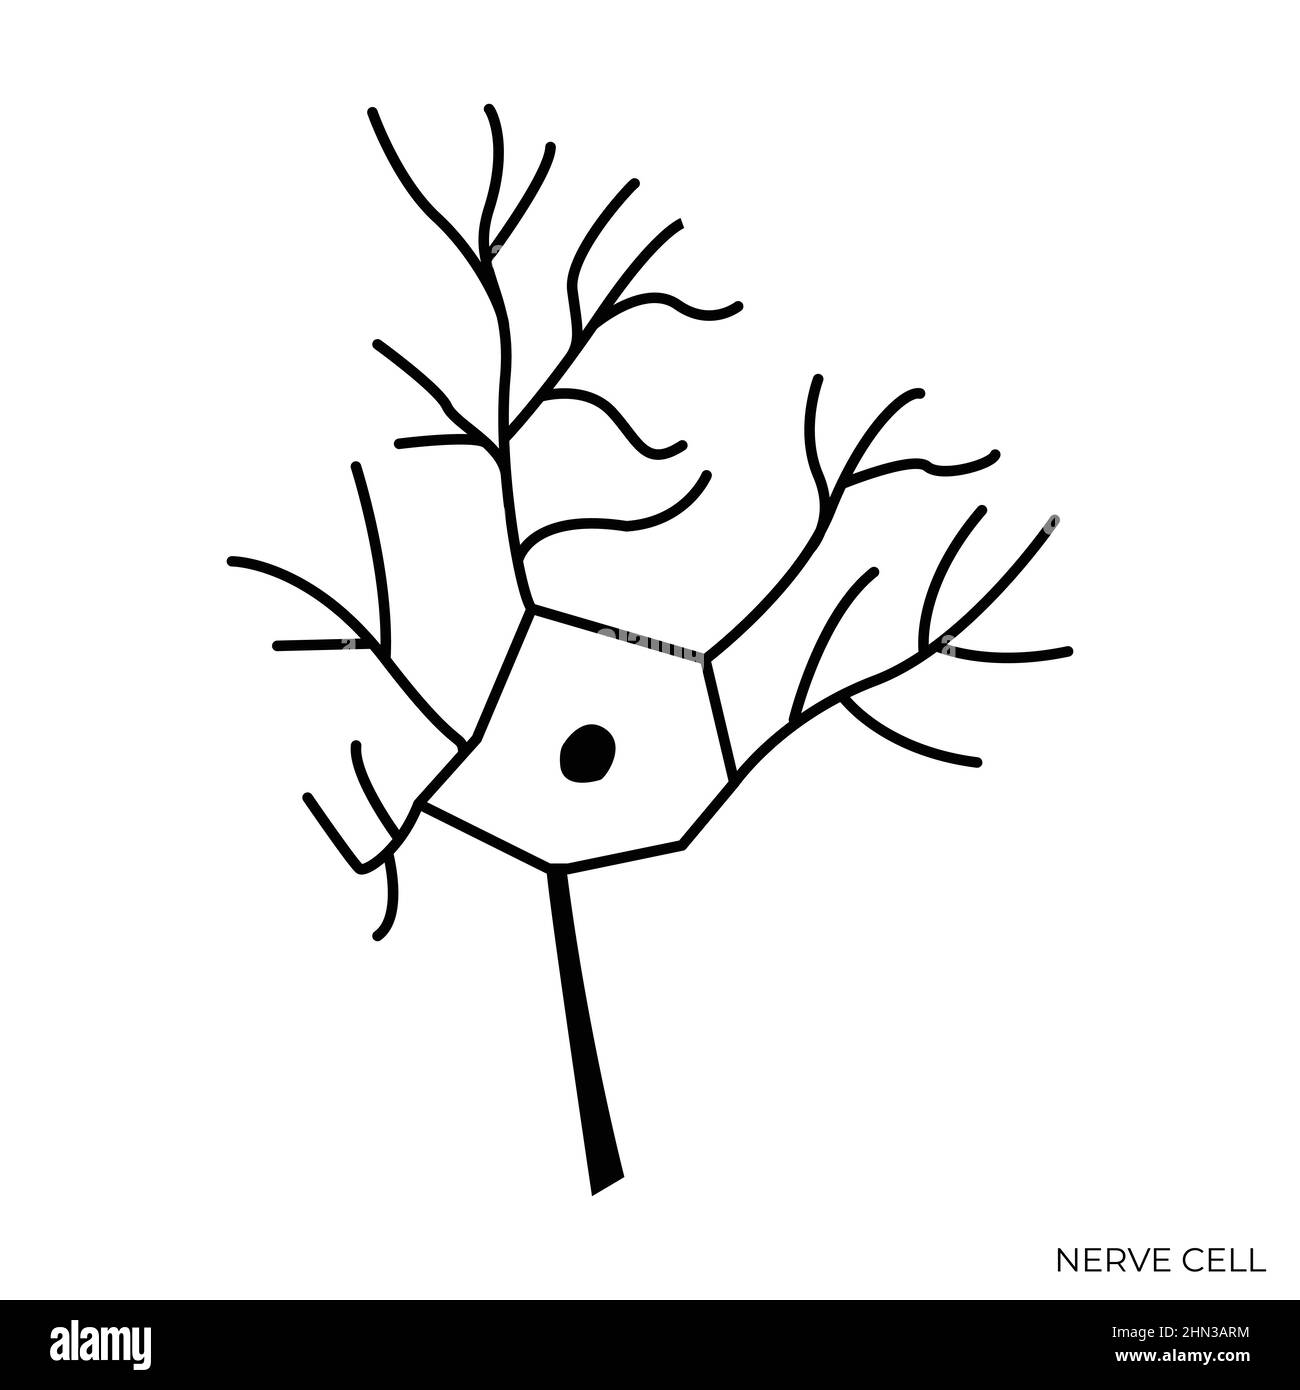 Schwarze und weiße isolierte Abbildung der Nervenzelle Stock Vektor